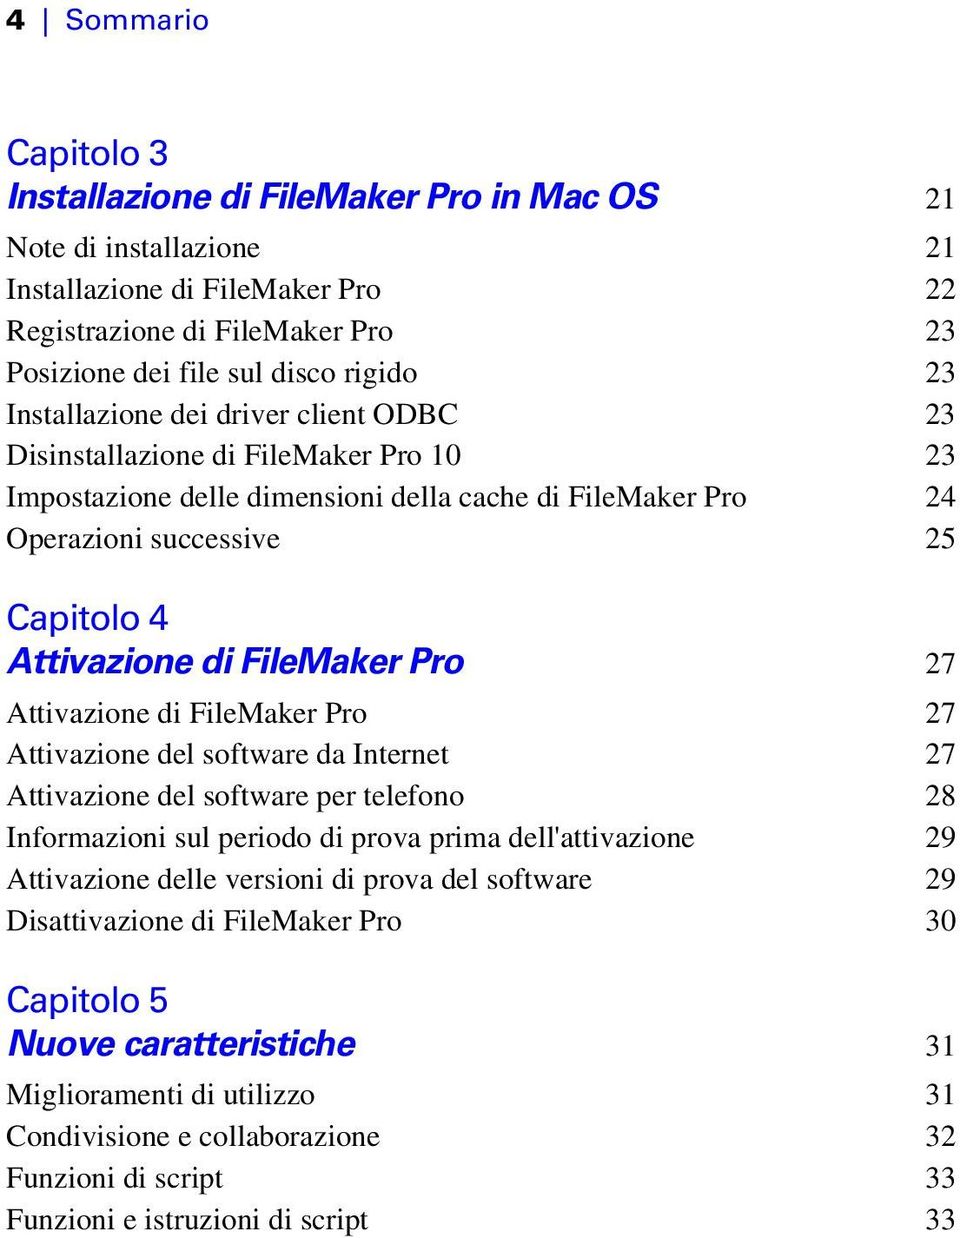 FileMaker Pro 27 Attivazione di FileMaker Pro 27 Attivazione del software da Internet 27 Attivazione del software per telefono 28 Informazioni sul periodo di prova prima dell'attivazione 29